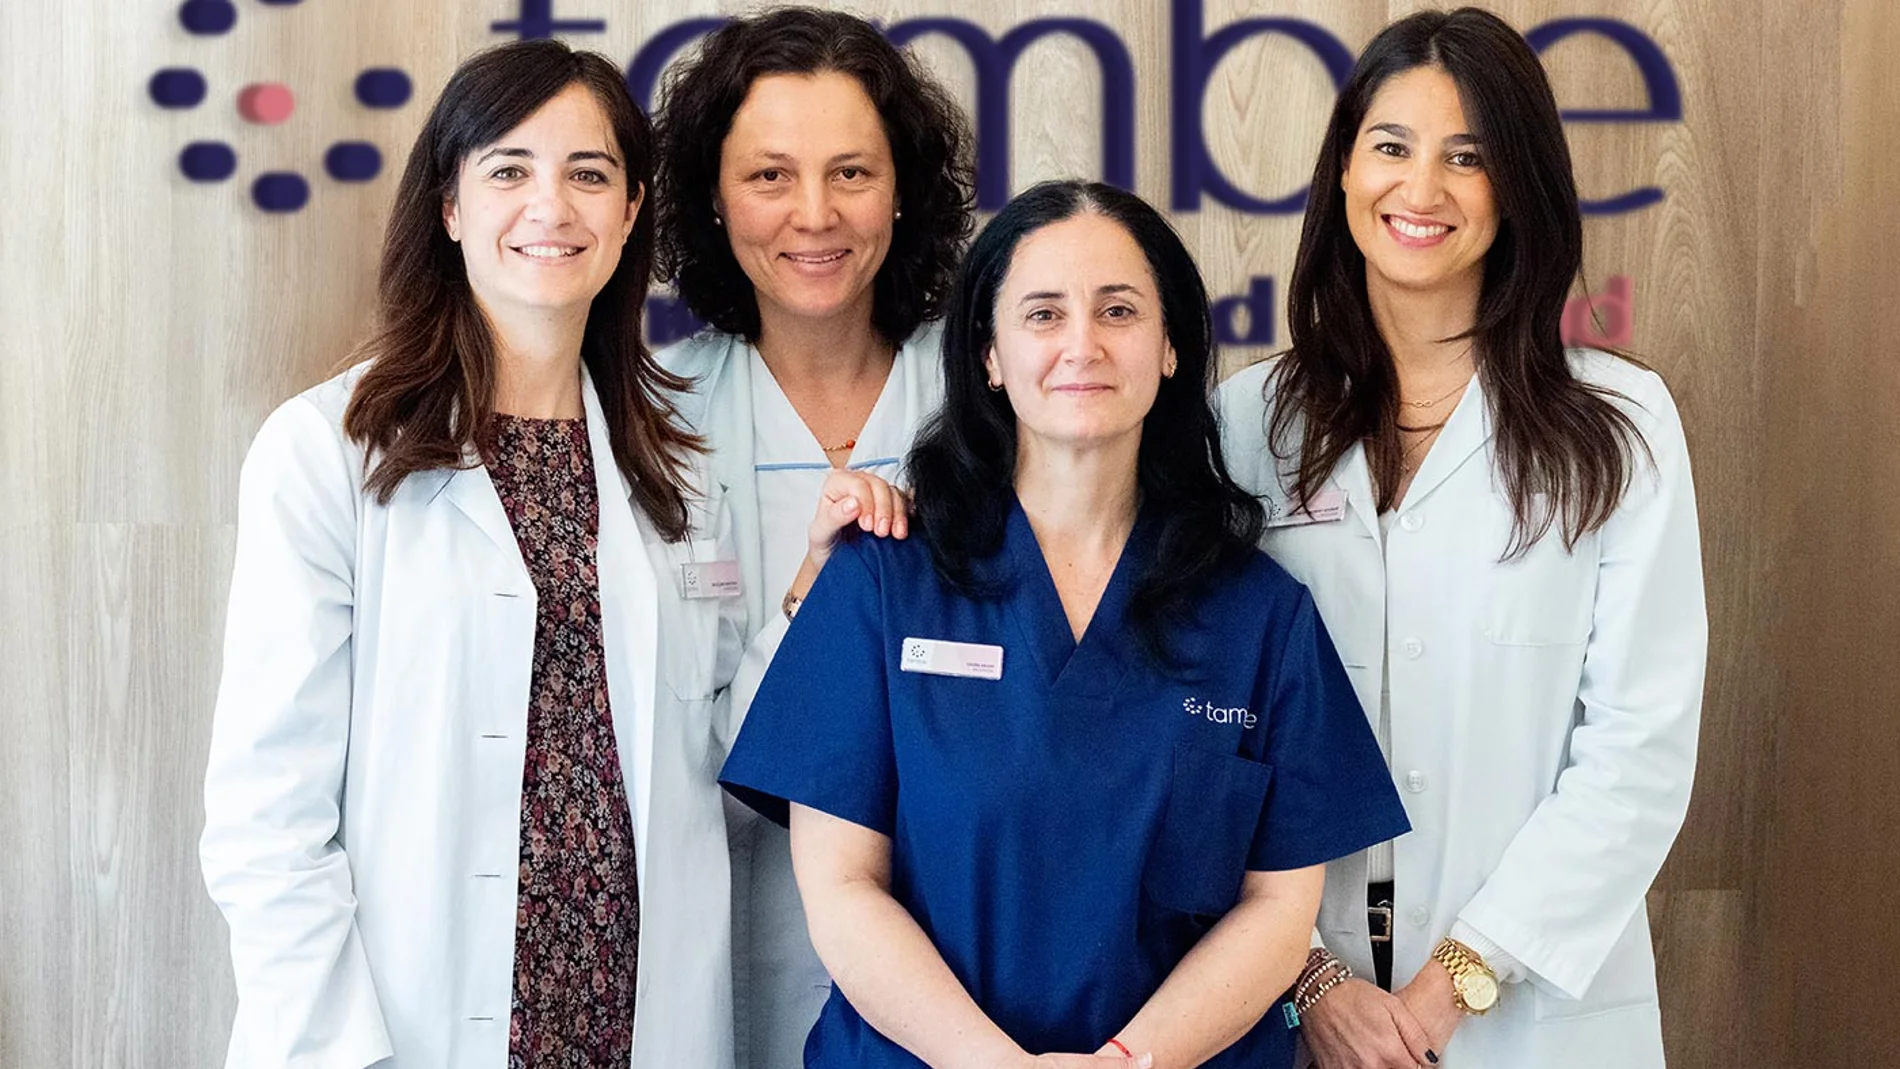 De izquierda a derecha: la Dra. Elena Santiago, Maribel Carrasco, enfermera, Susana Cortes, Directora de Laboratorio, y la Dra. Silvia Moreno, psicóloga de Clínica Tambre.